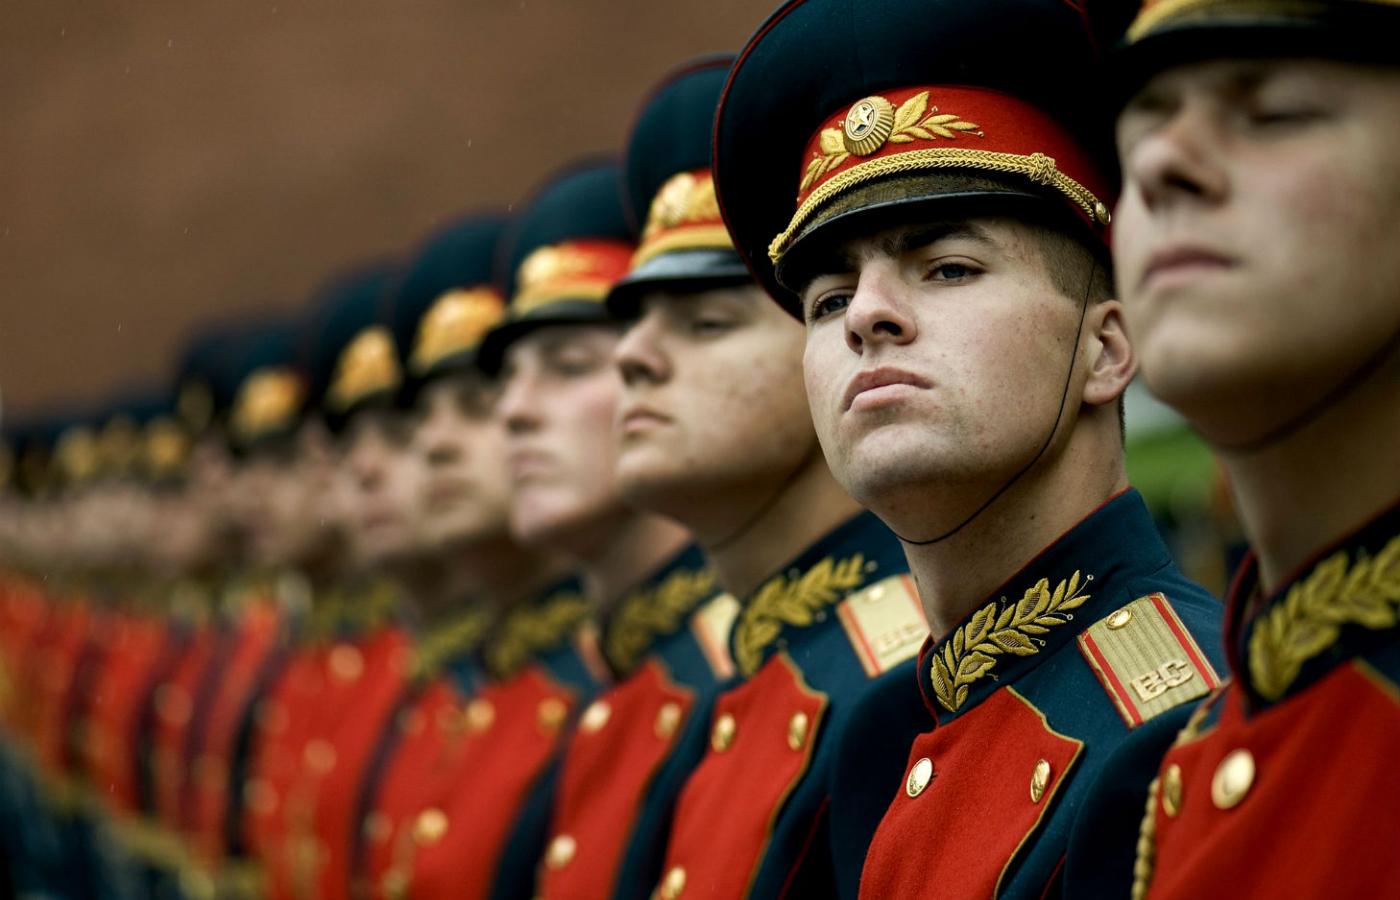 Pomimo modernizacji rosyjskiej armii jej możliwość odniesienia wojskowego zwycięstwa nad NATO jest wysoce dyskusyjna.